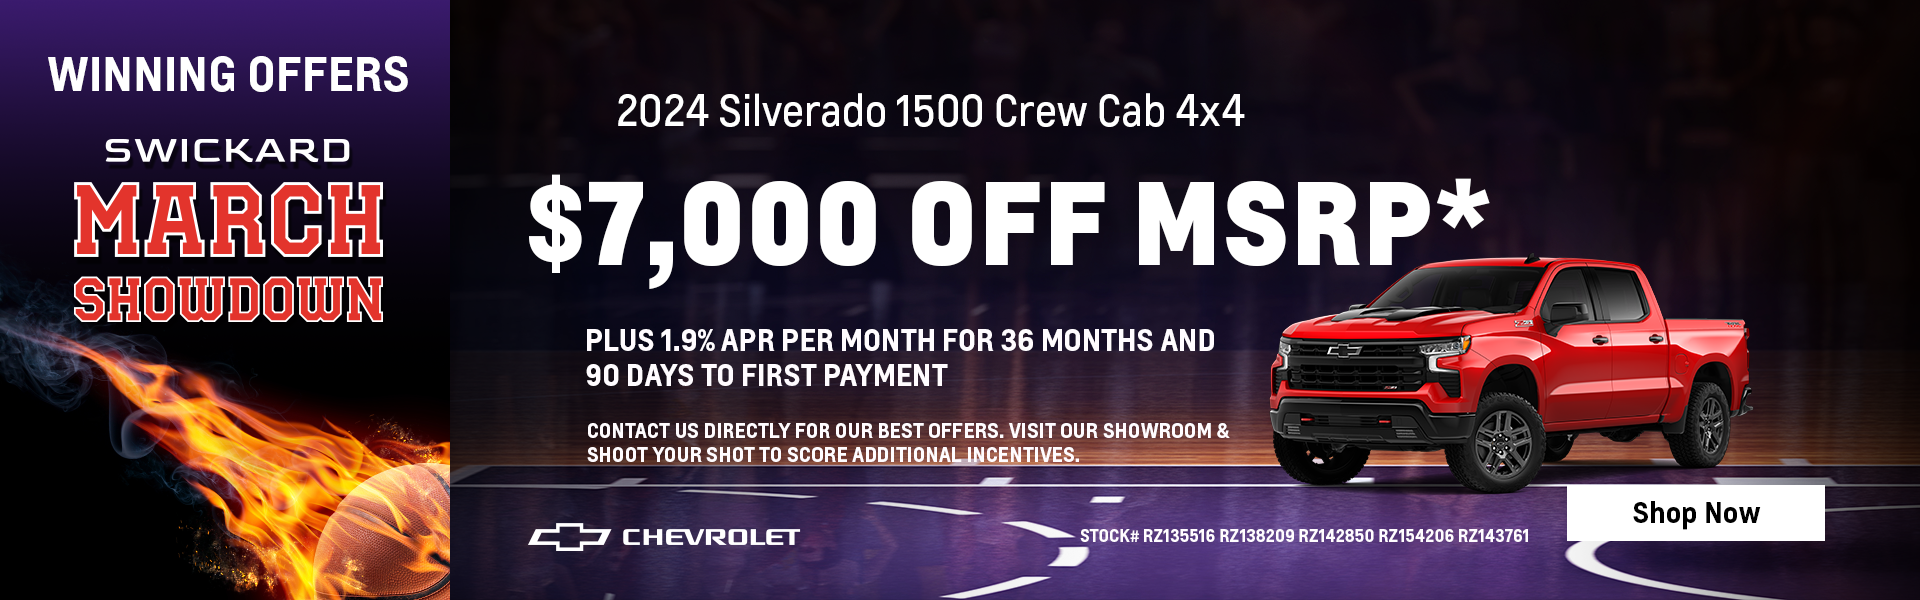 $7,000 off MSRP* 2024 Silverado 1500 Crew Cab 4x4